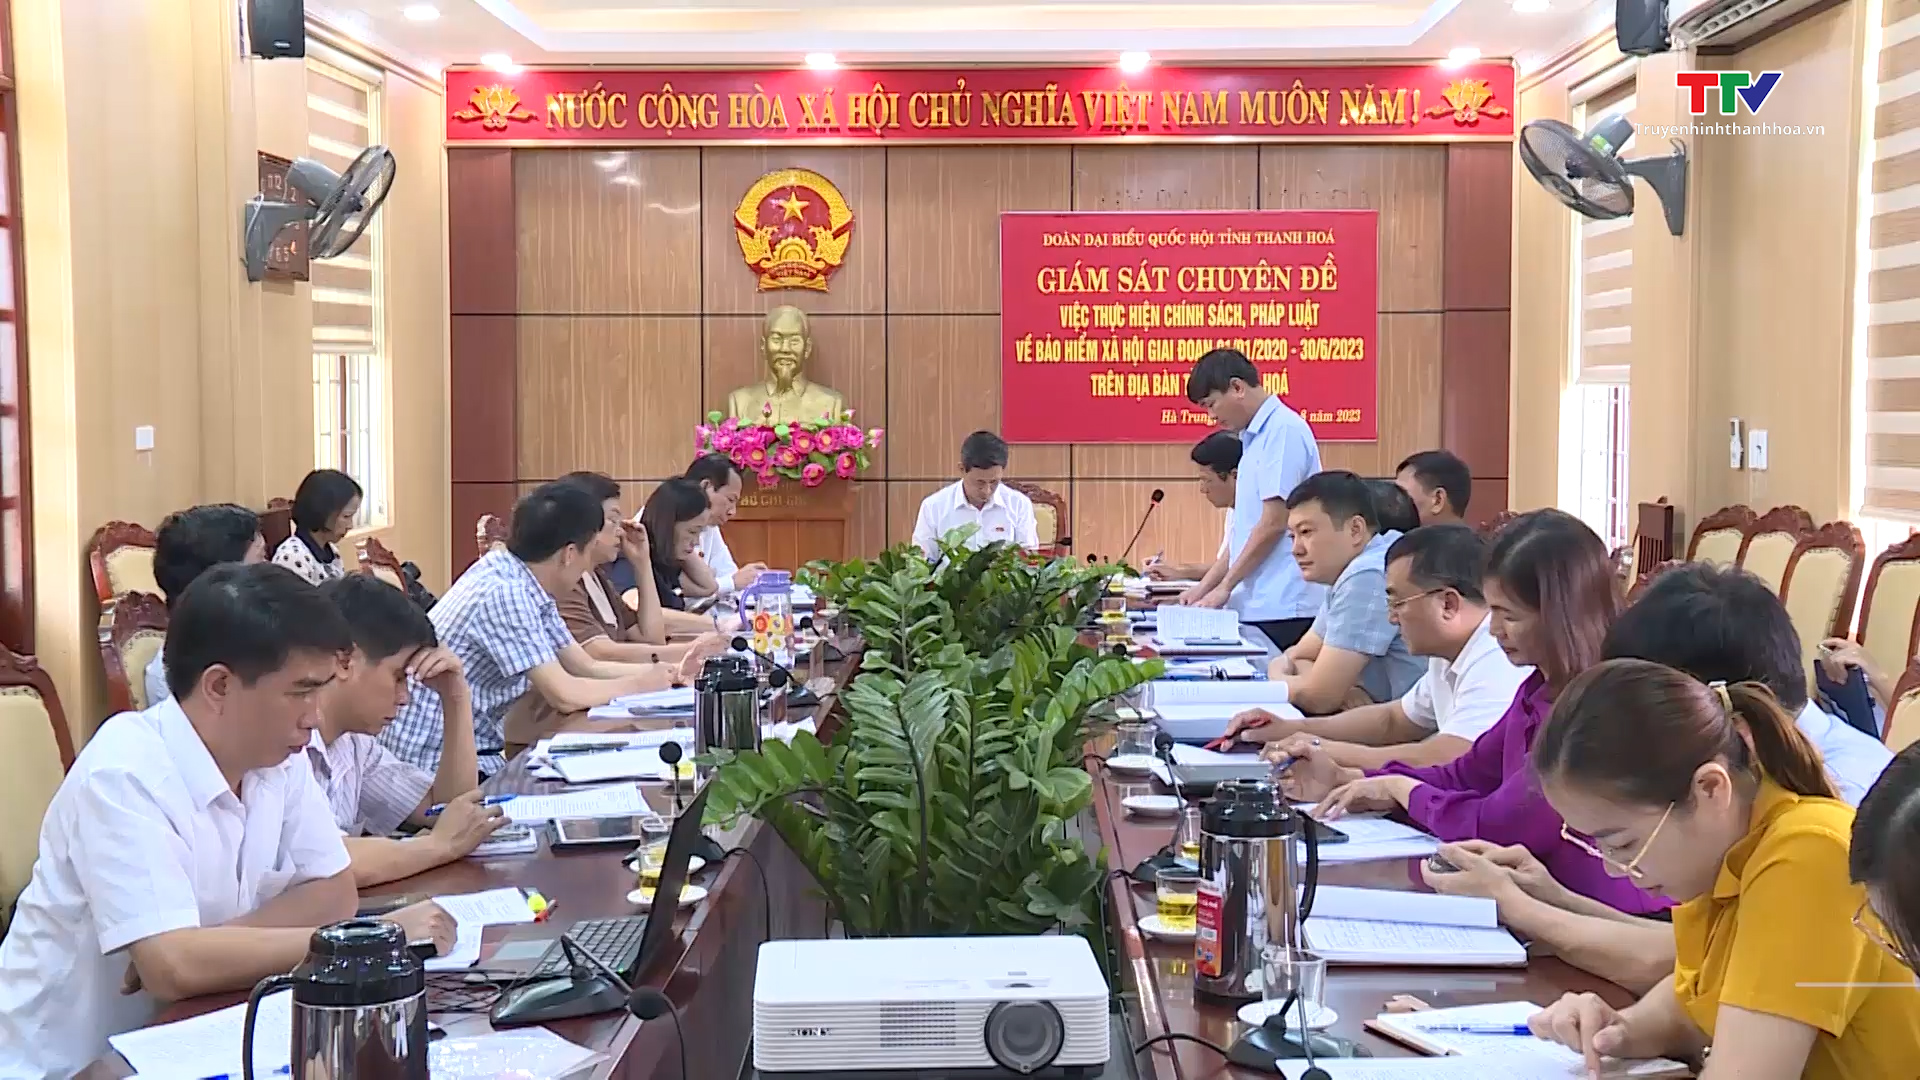 Đoàn Đại biểu Quốc hội Thanh Hóa giám sát việc thực hiện chính sách, pháp luật về Bảo hiểm xã hội - Ảnh 2.